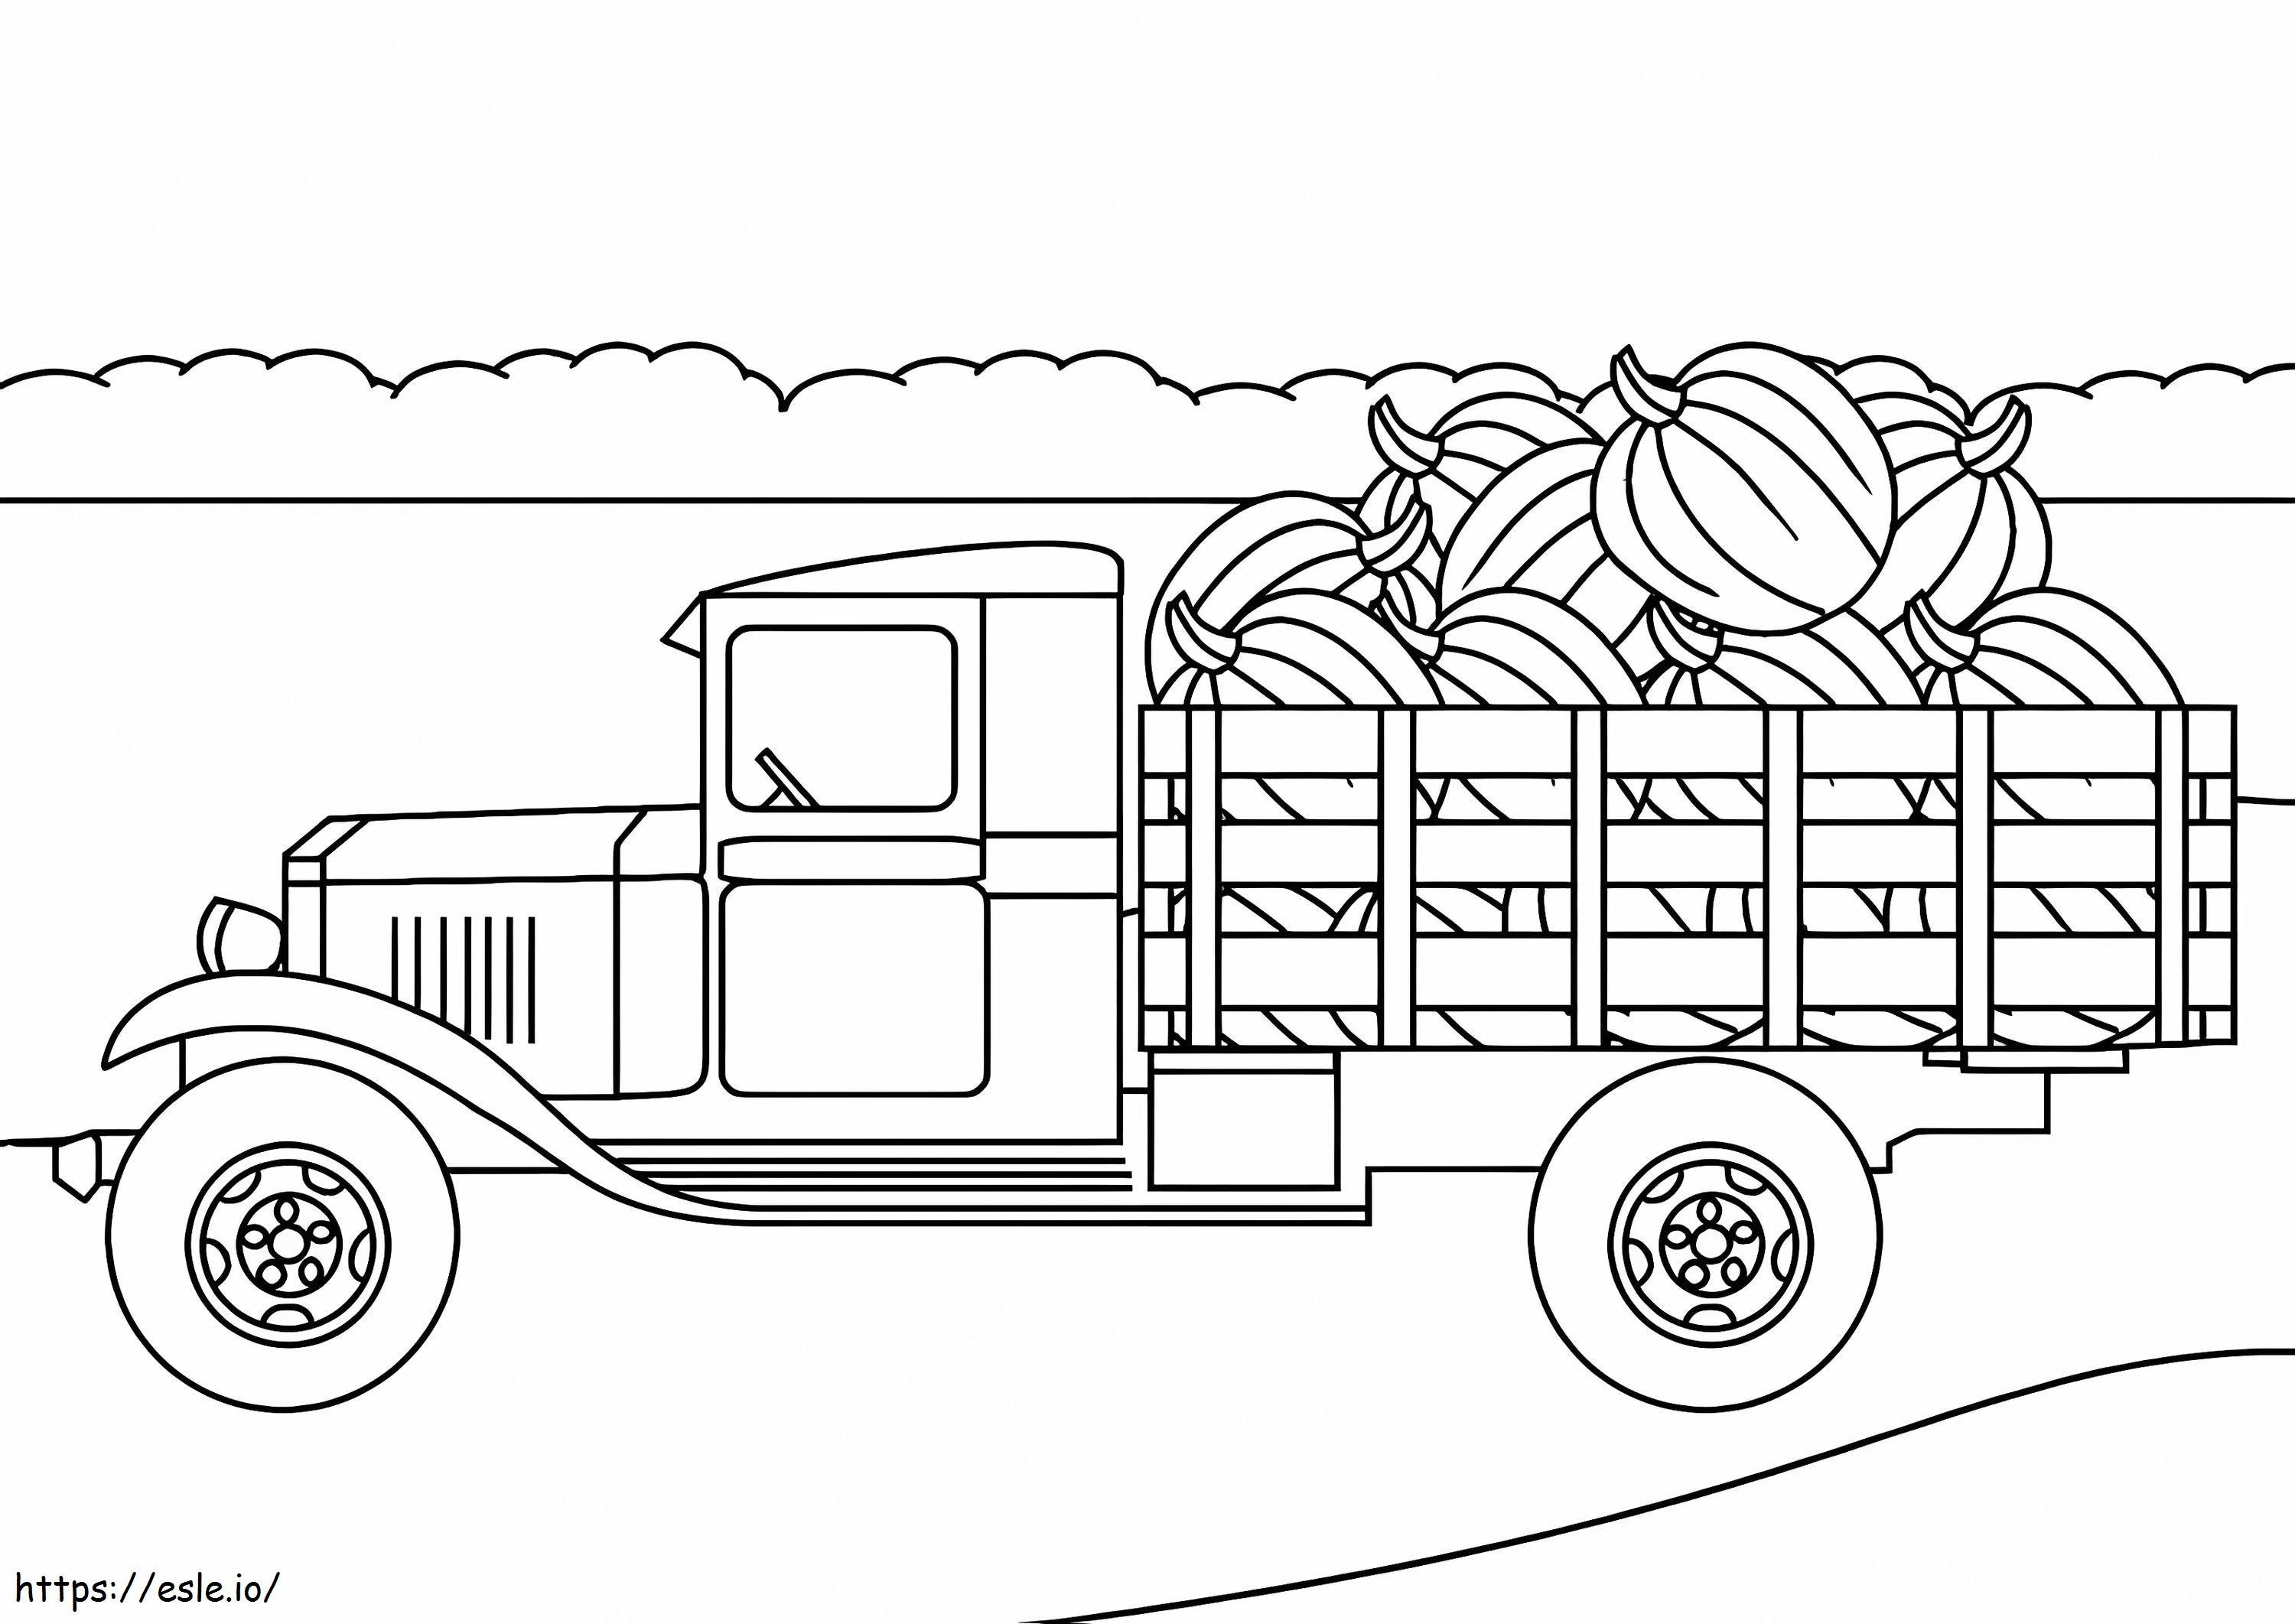 Coloriage Camion agricole à imprimer dessin